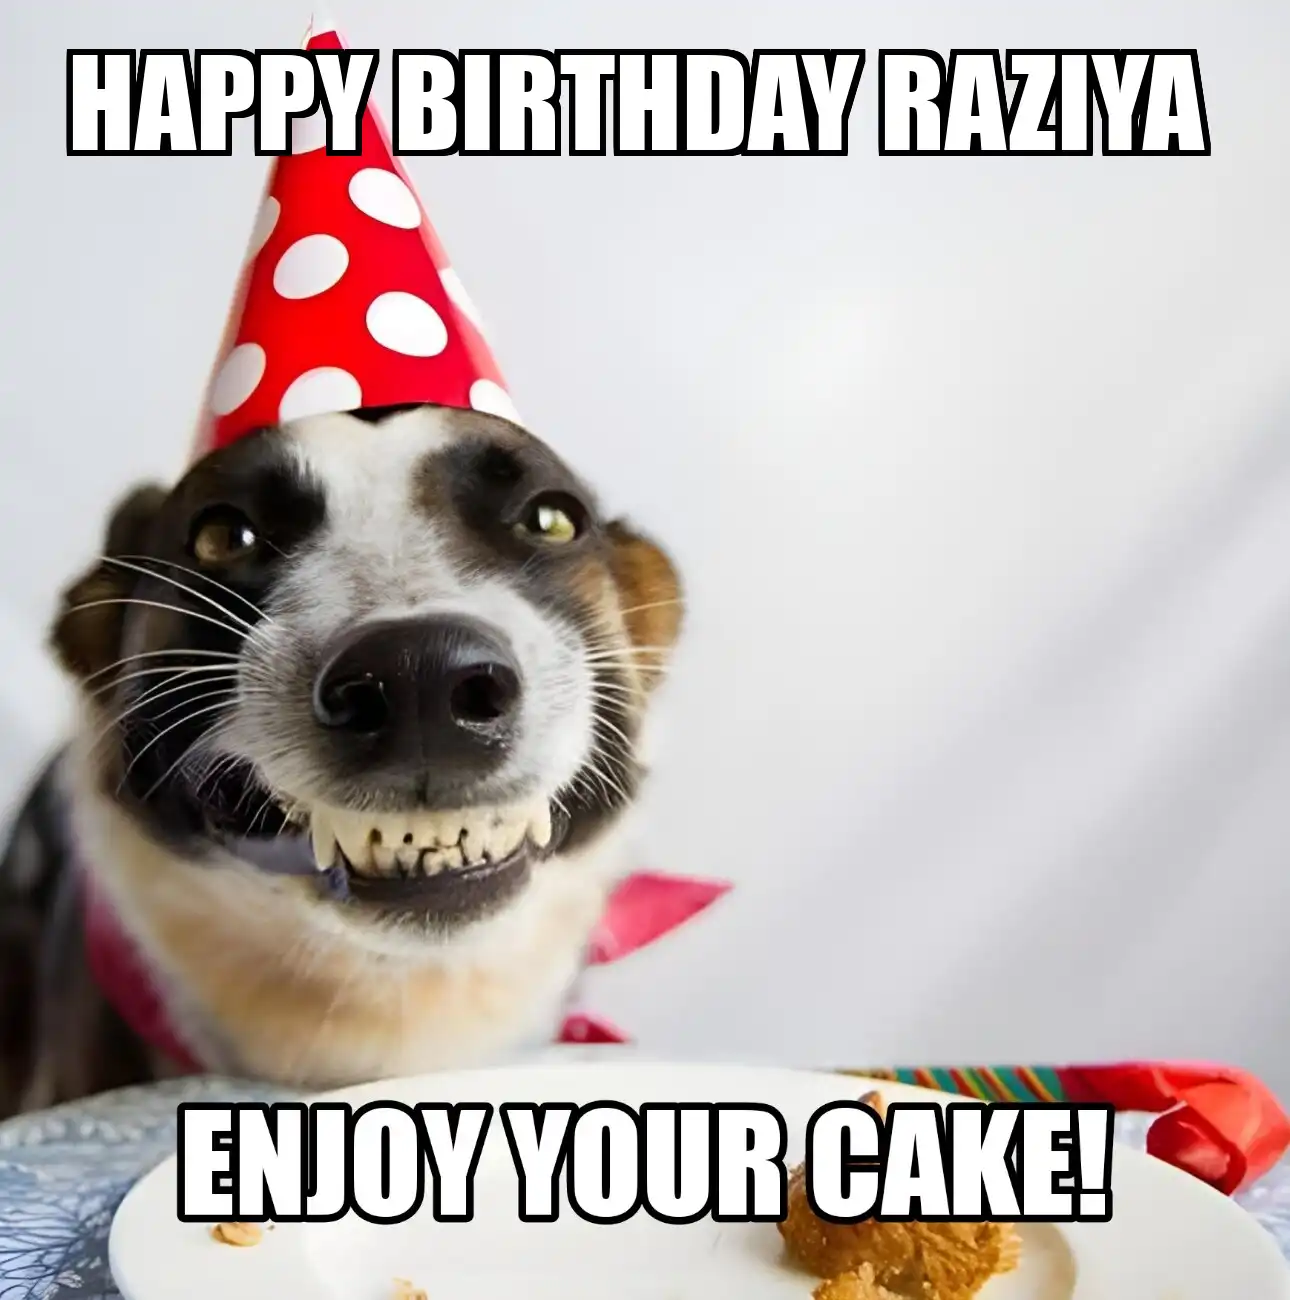 Happy Birthday Raziya Enjoy Your Cake Dog Meme